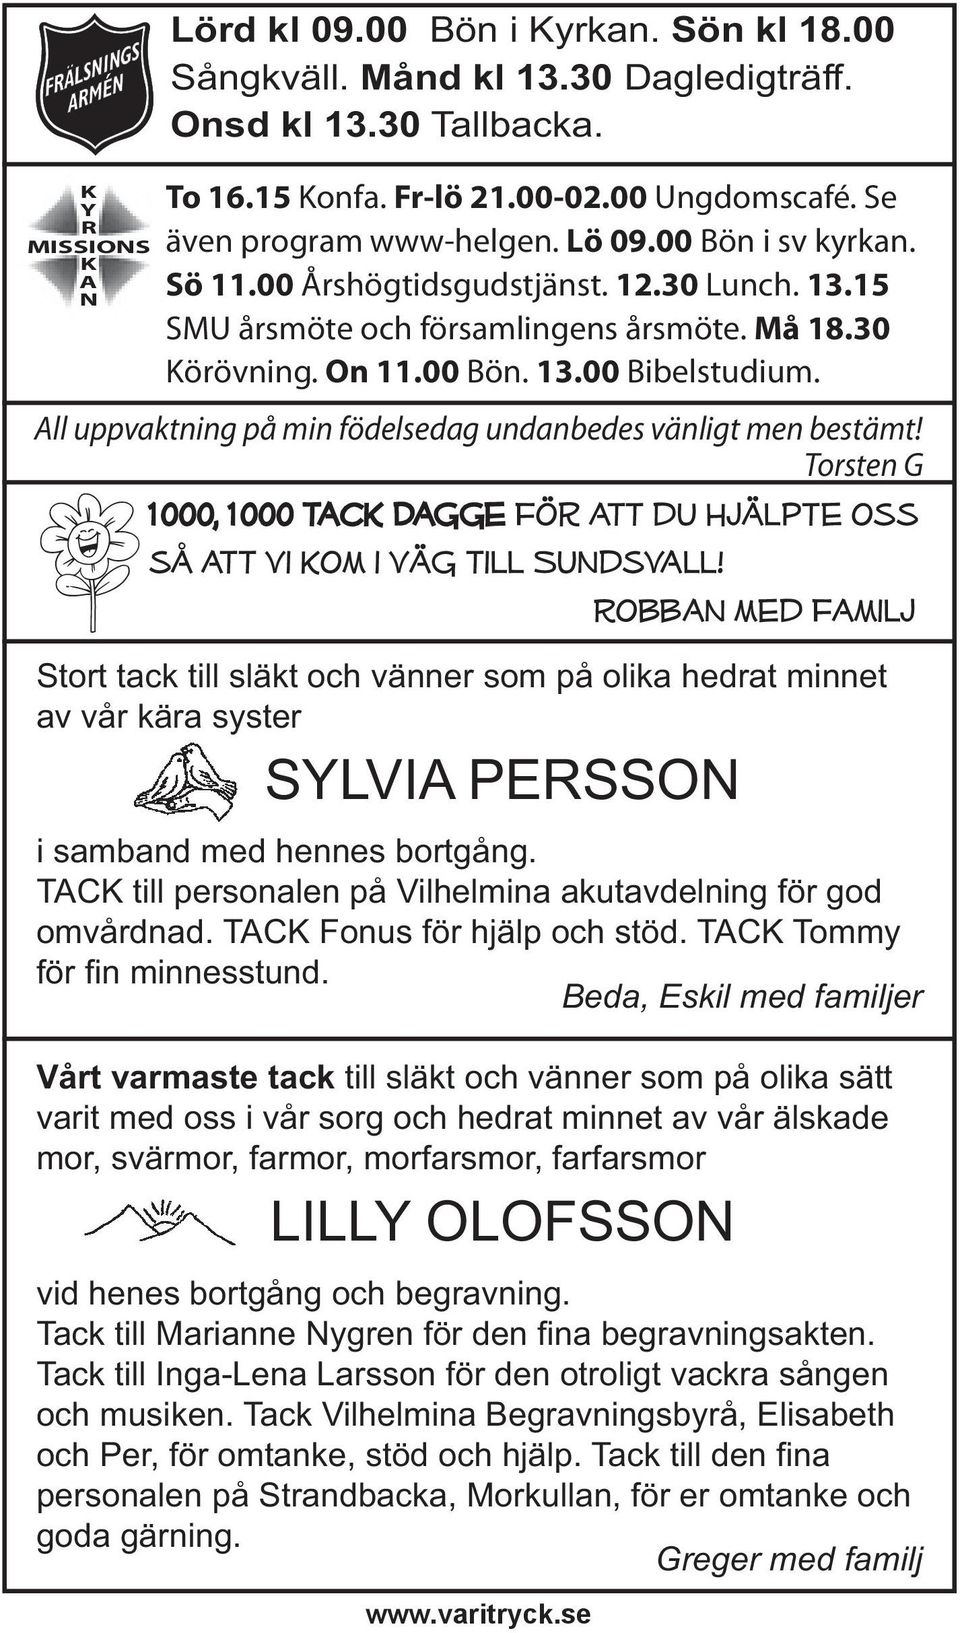 All uppvaktning på min födelsedag undanbedes vänligt men bestämt! Torsten G 1000, 1000 tack Dagge för att du hjälpte oss så att vi kom i väg till Sundsvall!